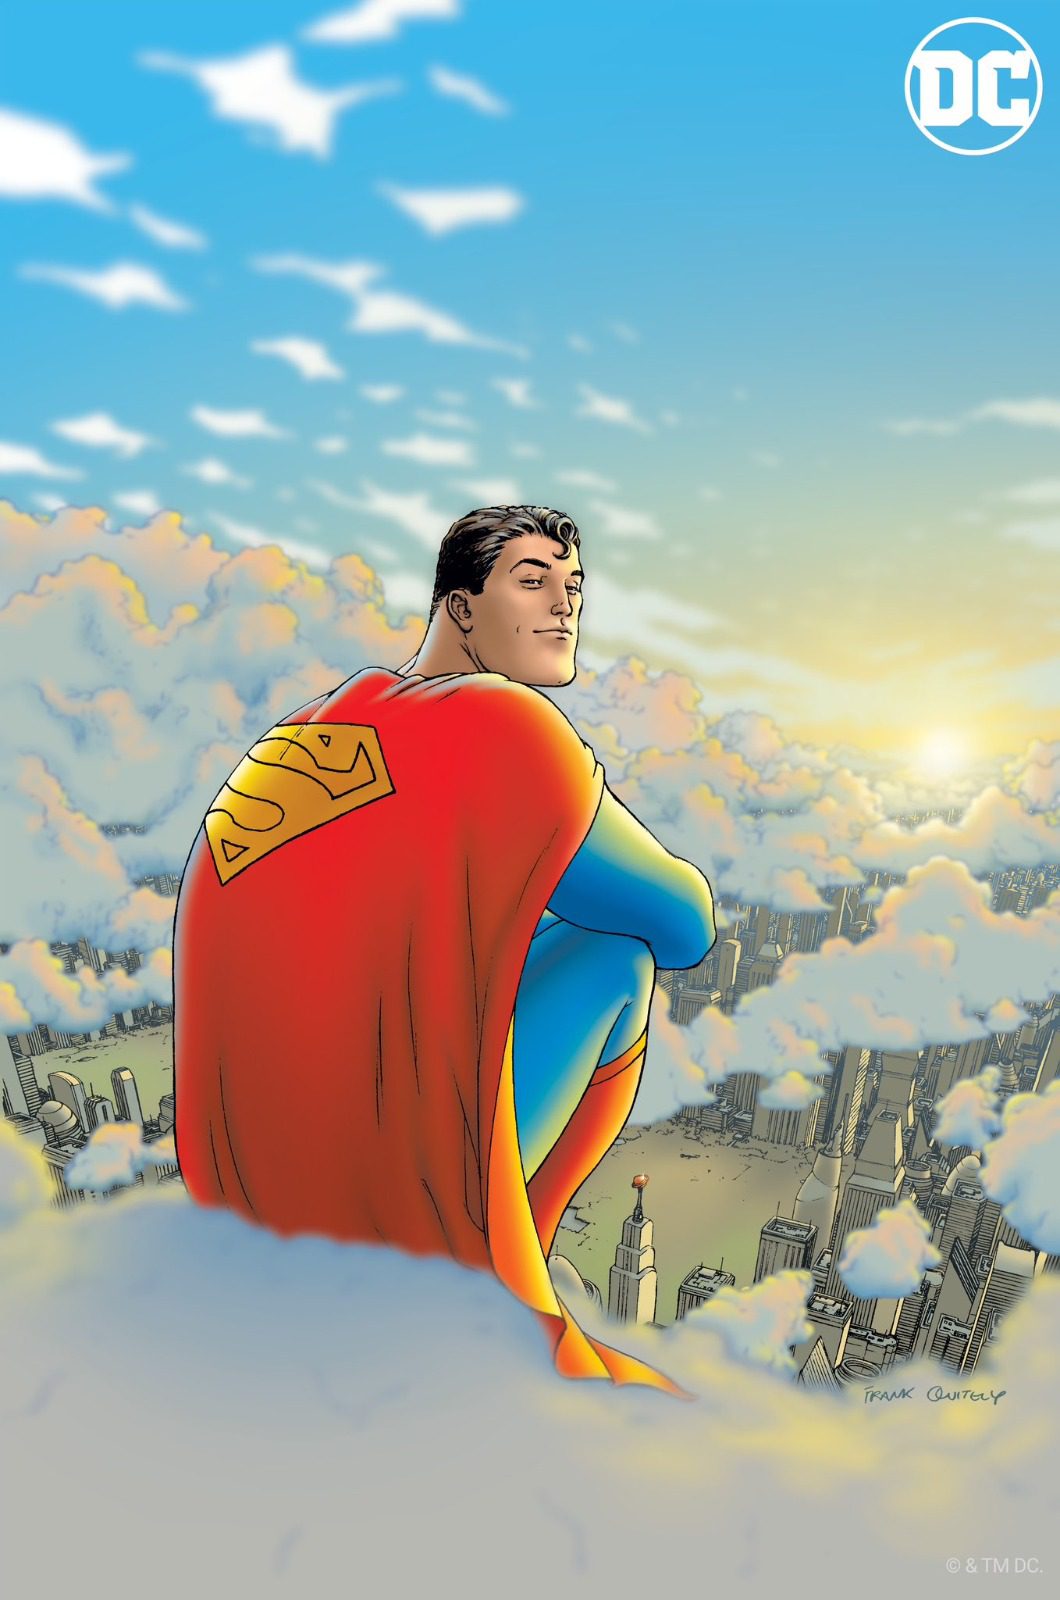 Filme do Superman, séries derivadas e mais: DC revela planos para